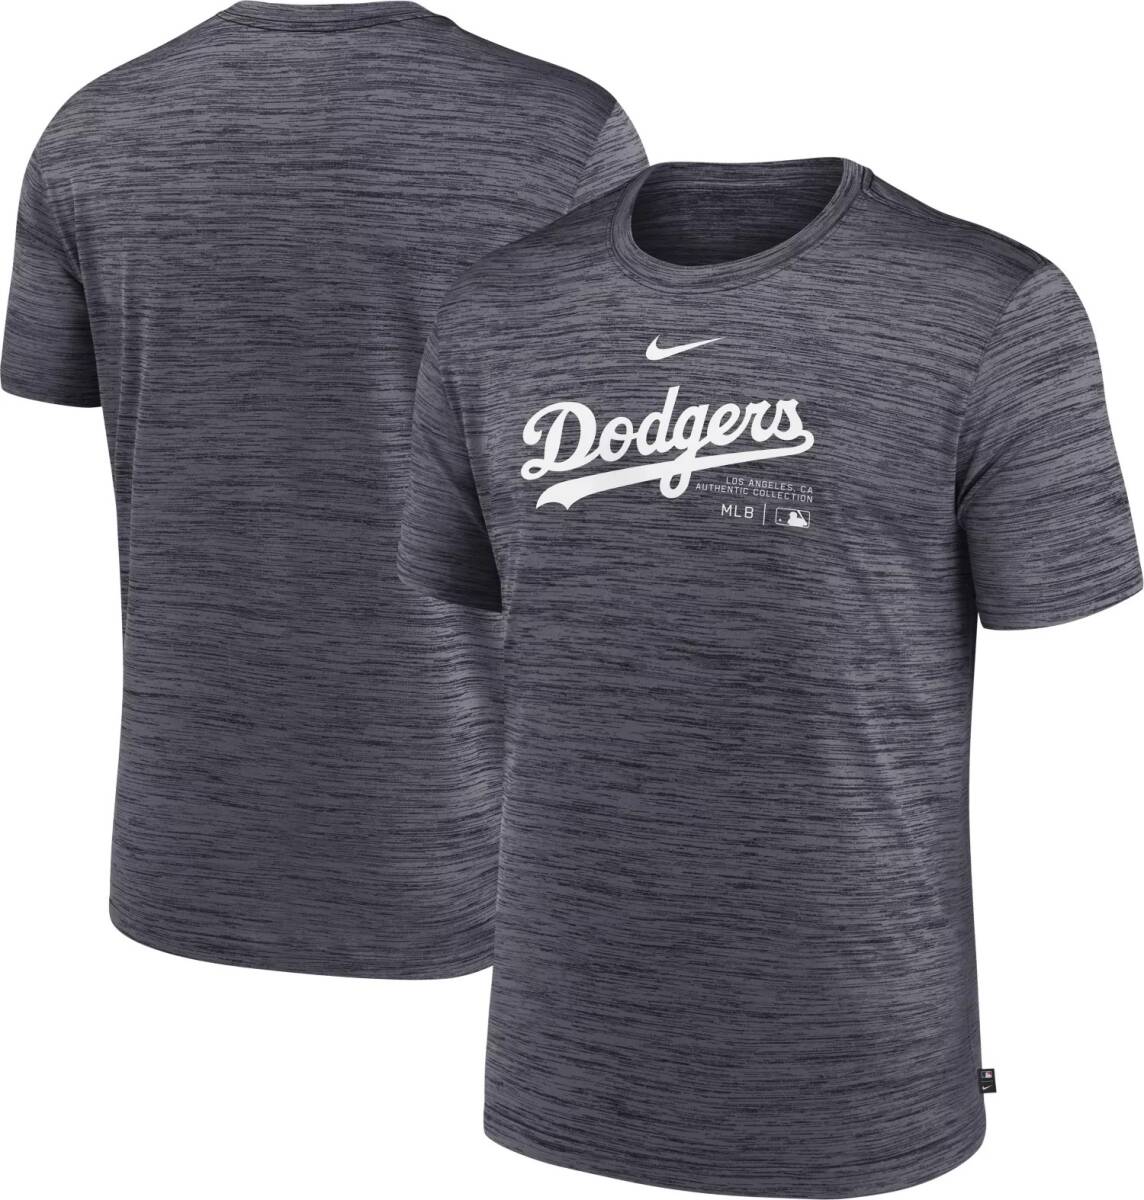 【USサイズ M 選手使用と同じモデル】MLB ロサンゼルス ドジャース Los Angeles Dodgers Authentic Collection Velocity Tシャツ グレー